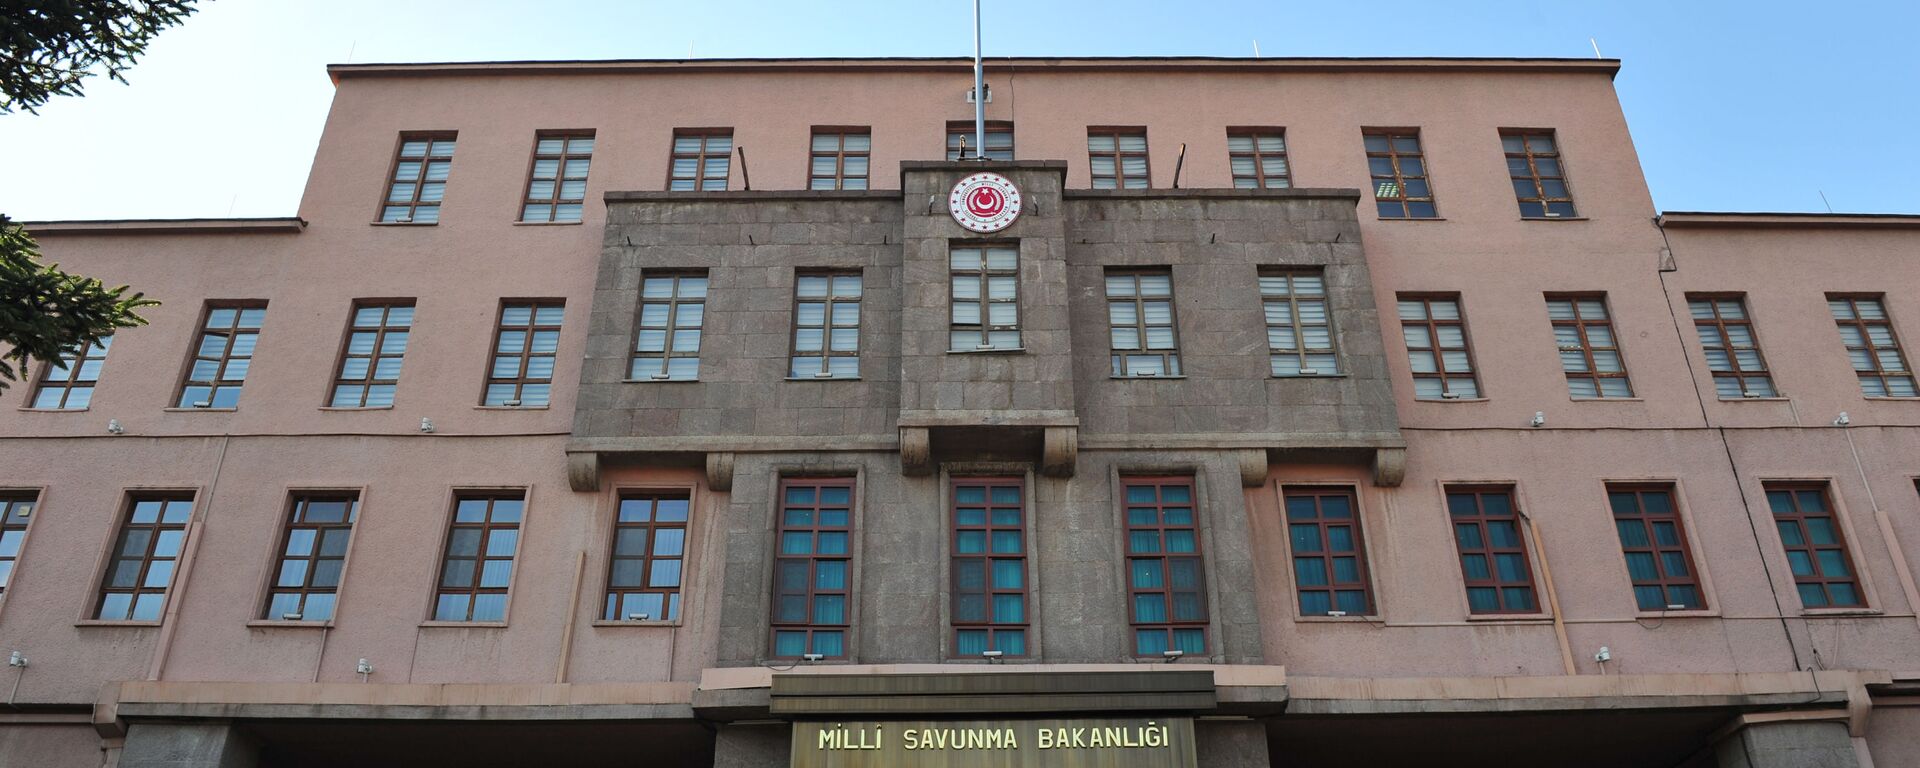 Milli Savunma Bakanlığı (MSB) - Sputnik Türkiye, 1920, 27.04.2021